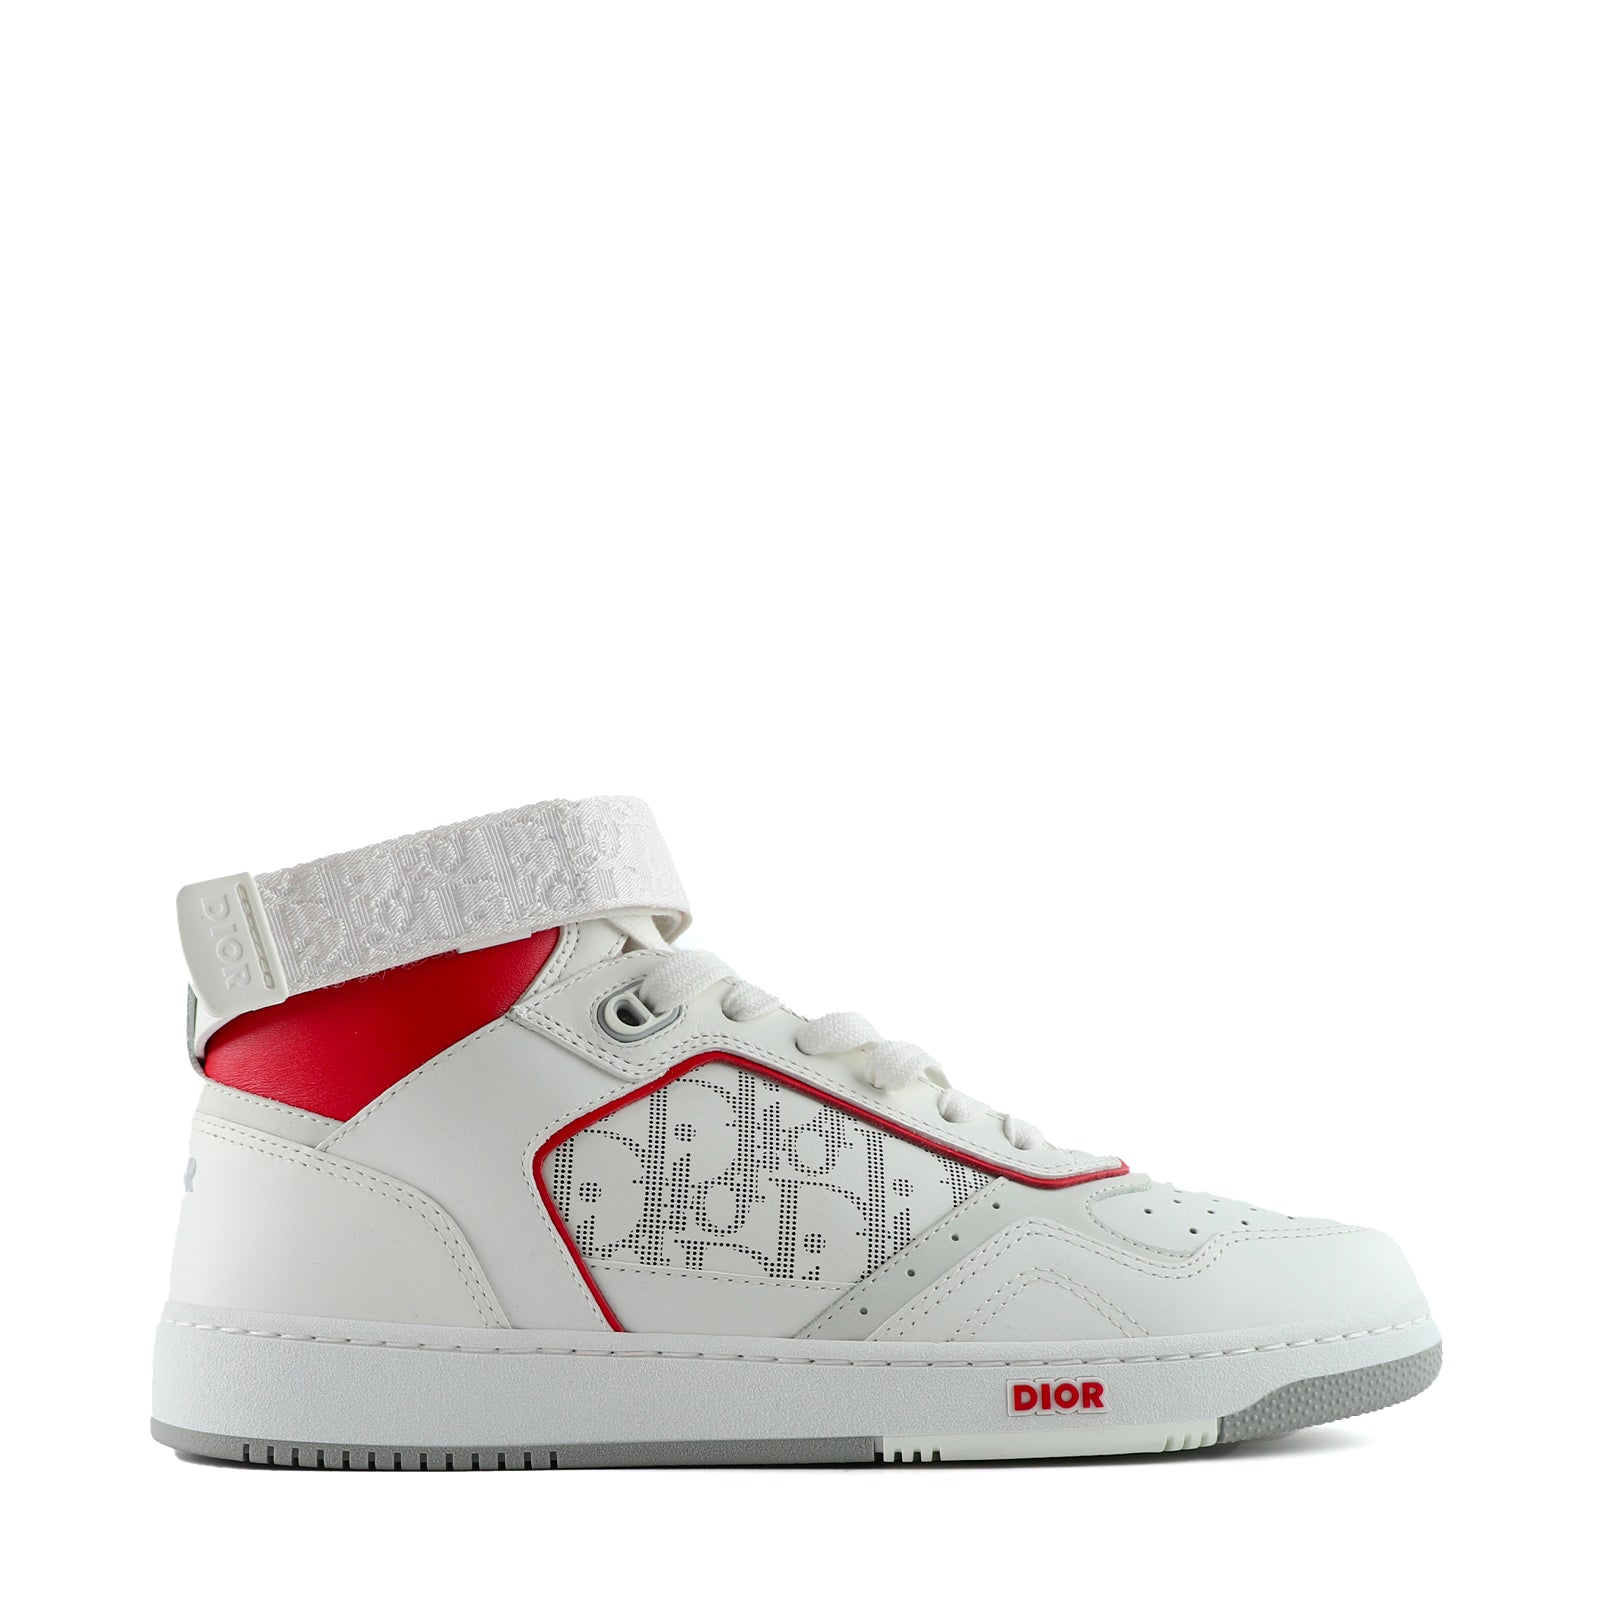 DIOR - Sneakers B27 High en cuir blanc et rouge (T42)